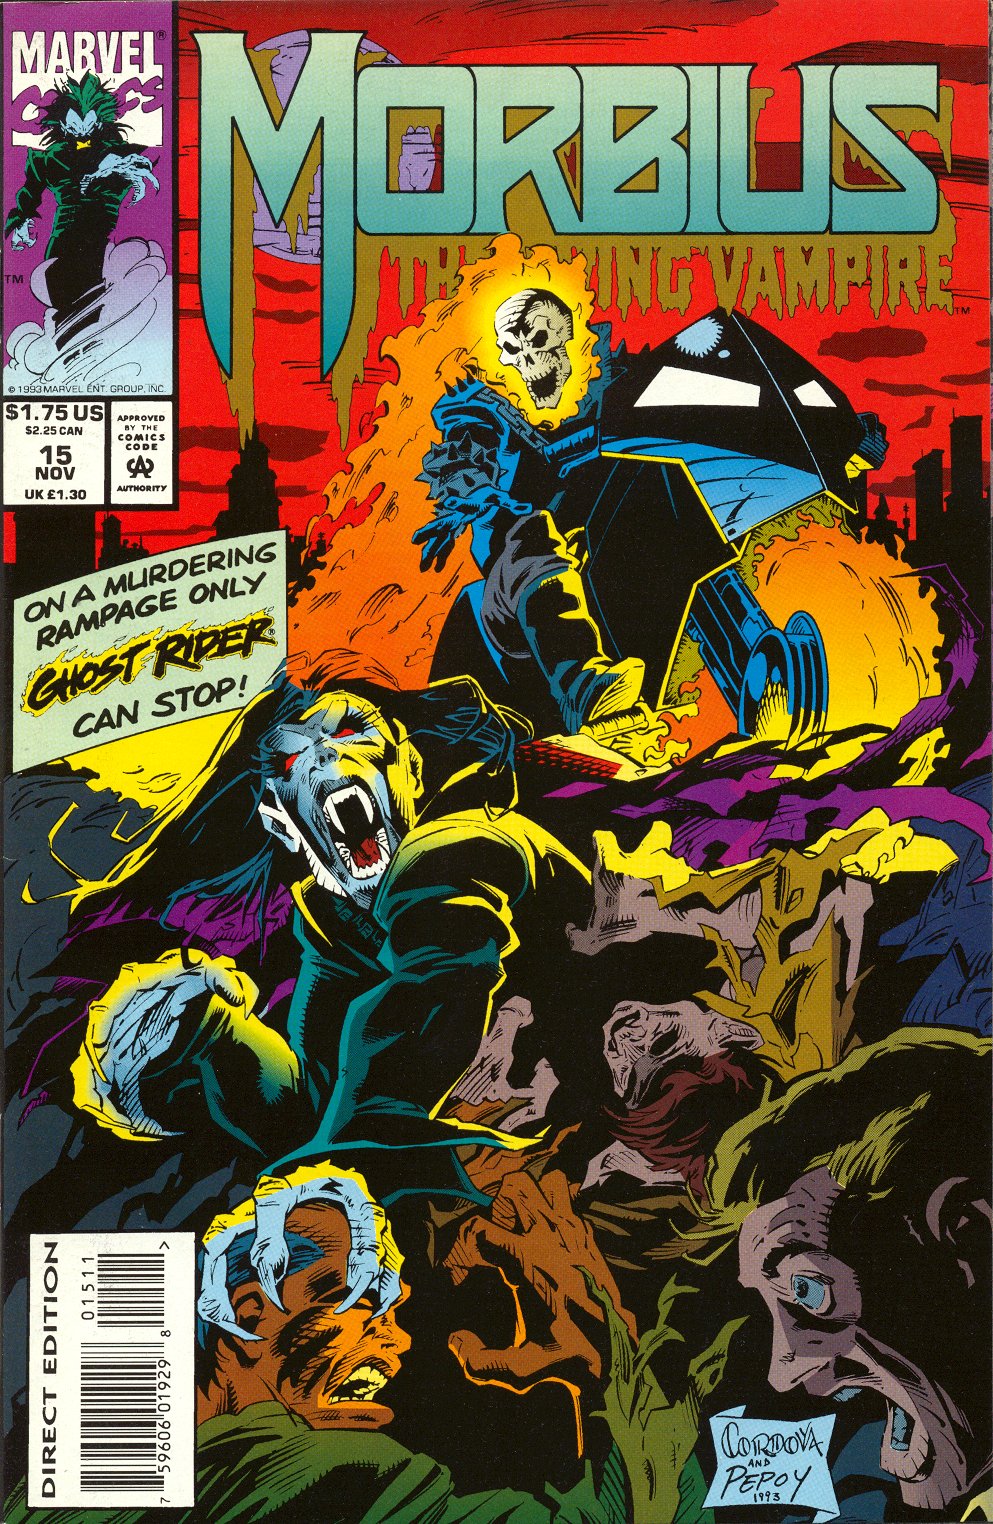 Morbius: The Living Vampire Vol. 1 #15